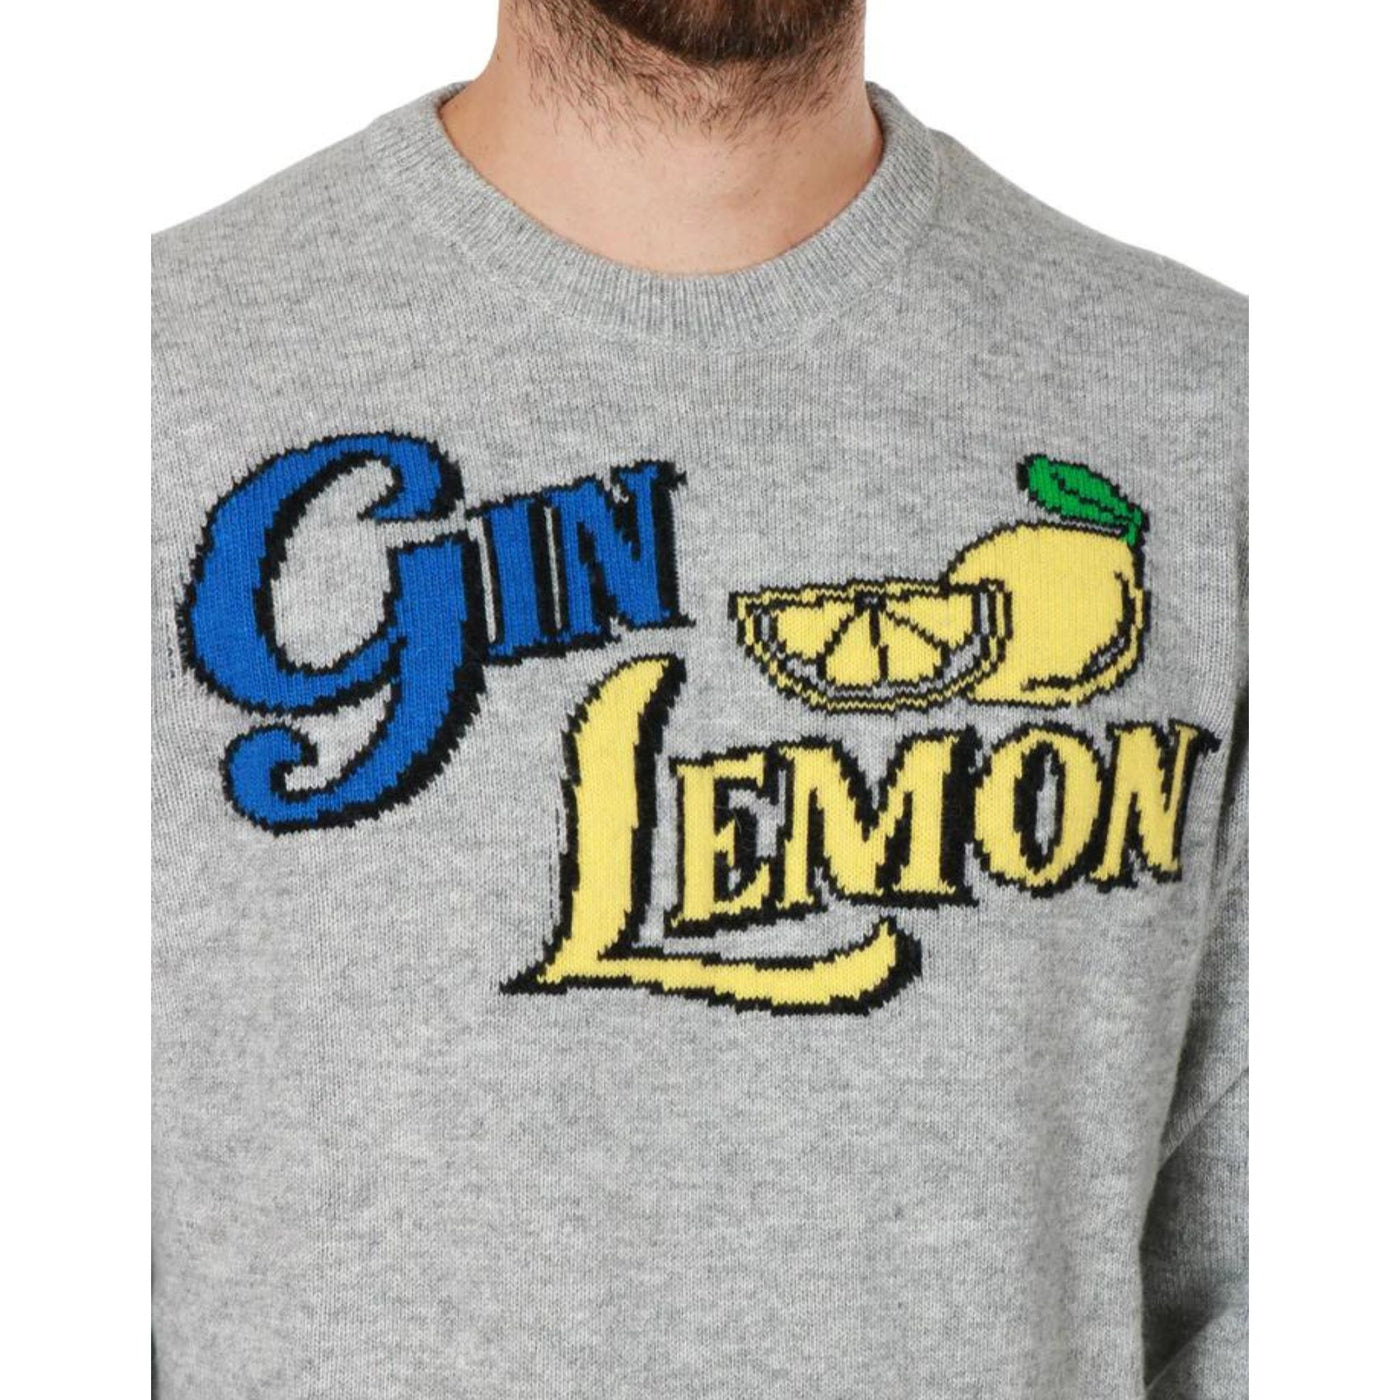 Immagine frontale dettaglio ravvicinato scritta "Gin Lemon"